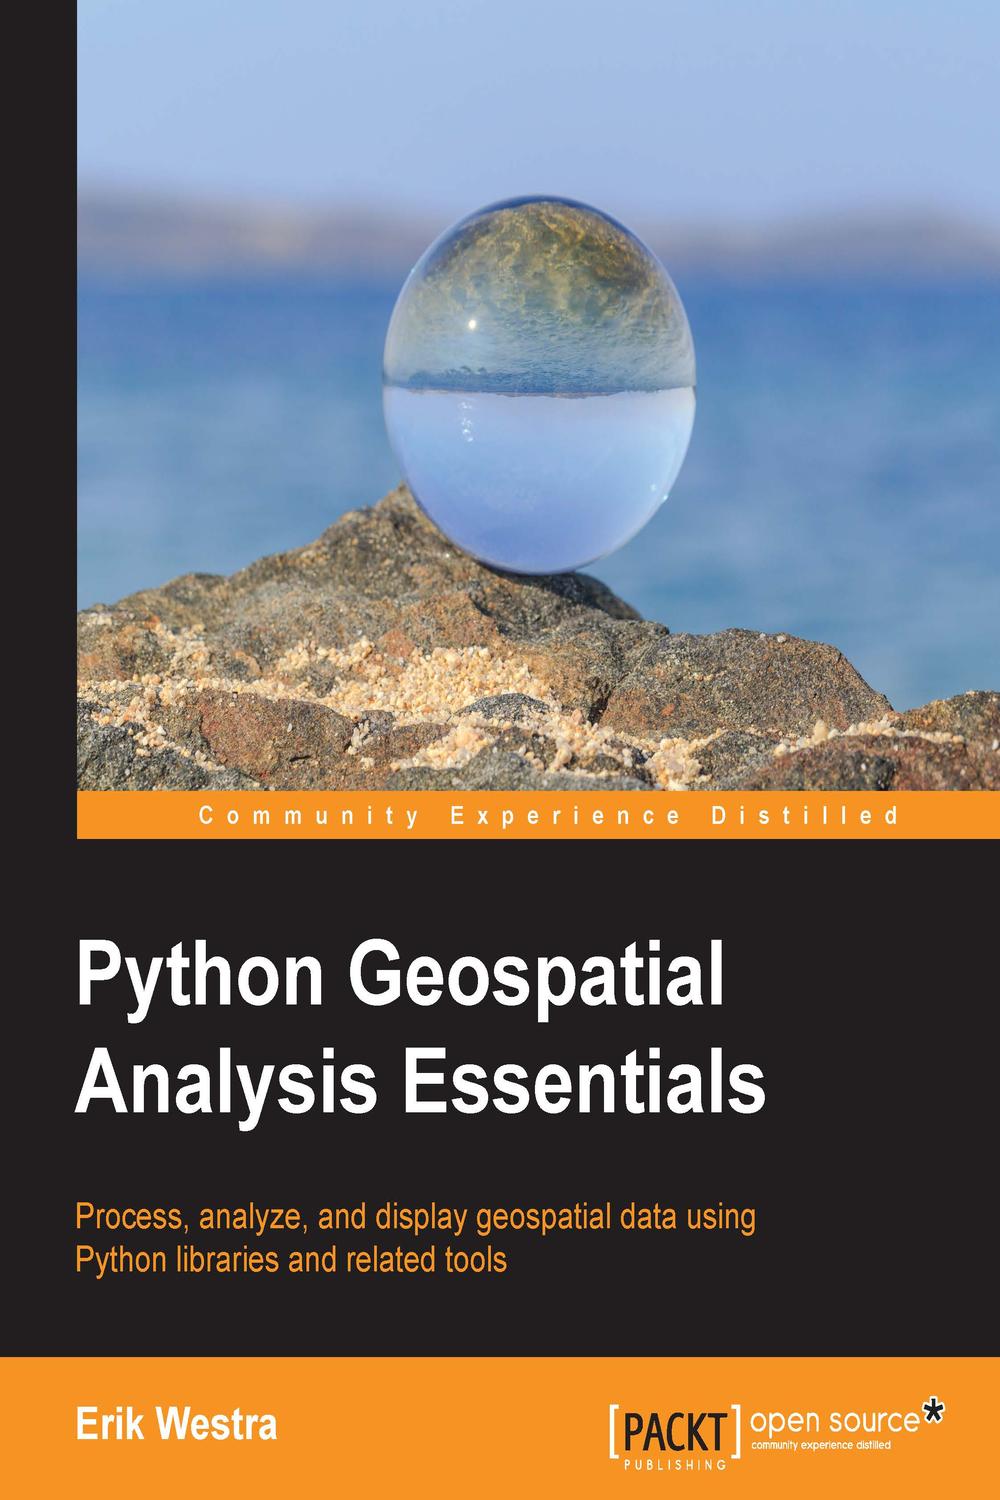 Python Geospatial Analysis Essentials - Erik Westra